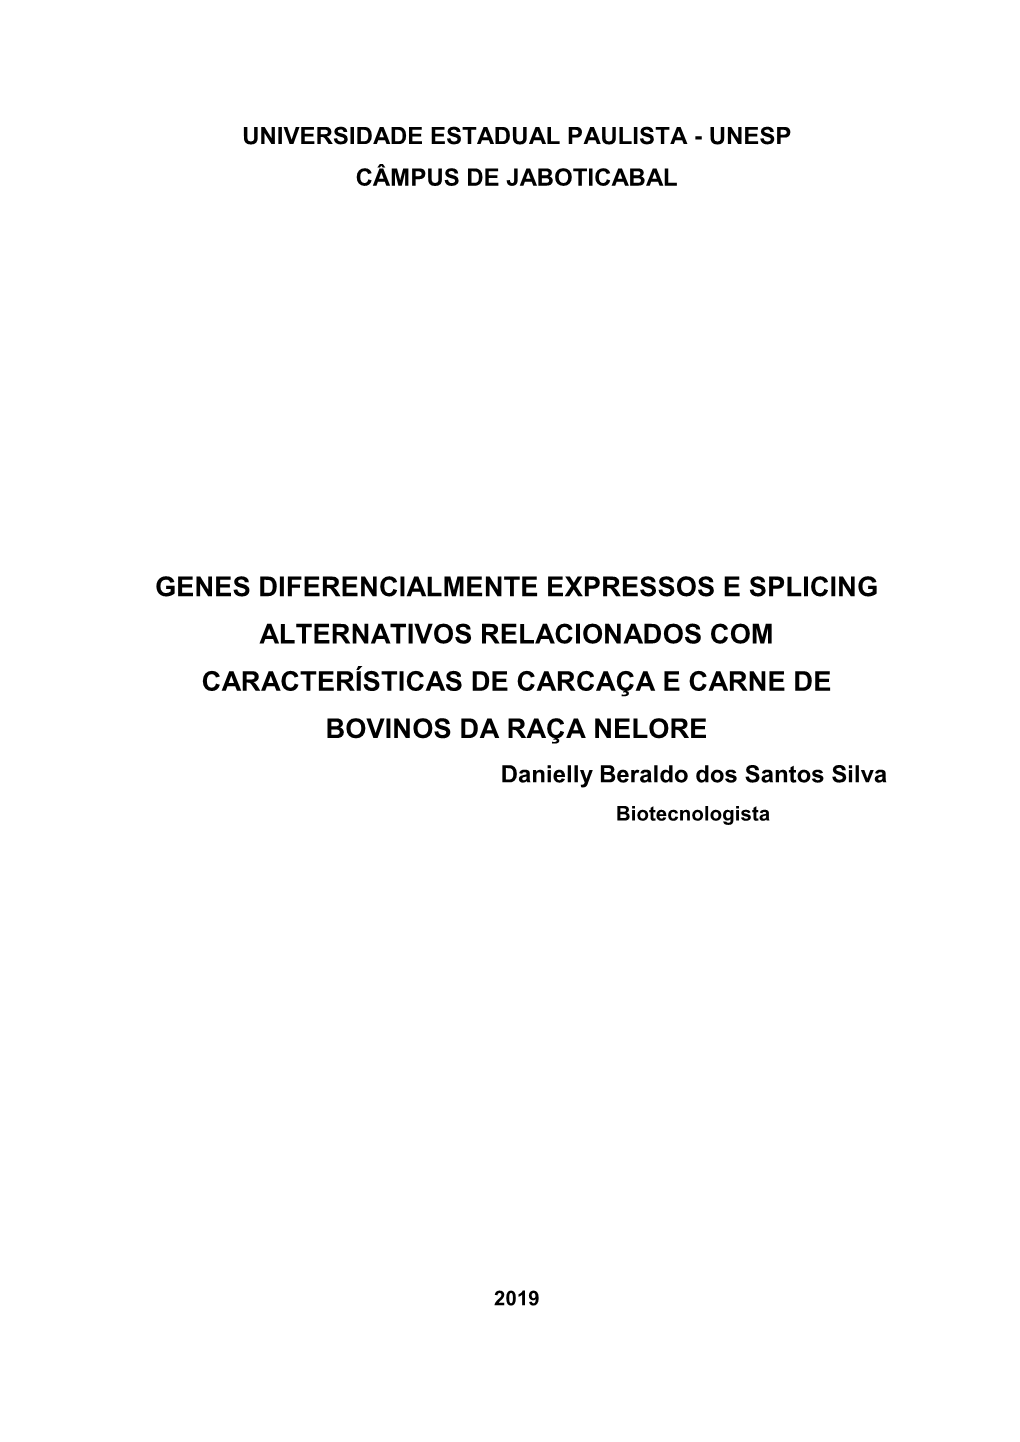 Genes Diferencialmente Expressos E Splicing